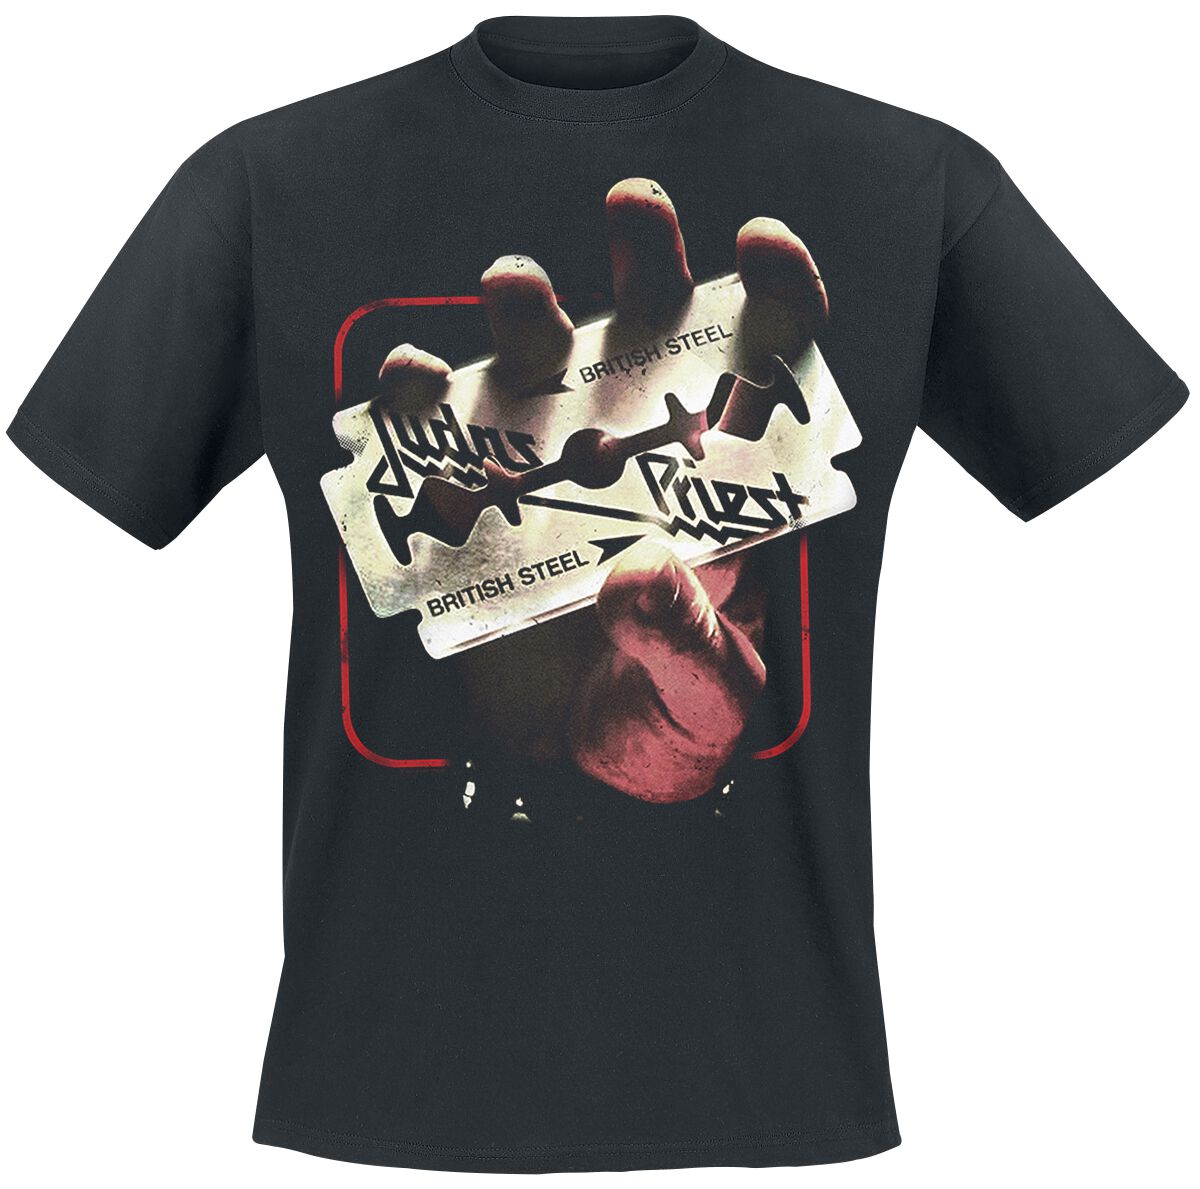 Judas Priest T-Shirt - British Steel 50HMY Tour - M bis XXL - für Männer - Größe M - schwarz  - EMP exklusives Merchandise!